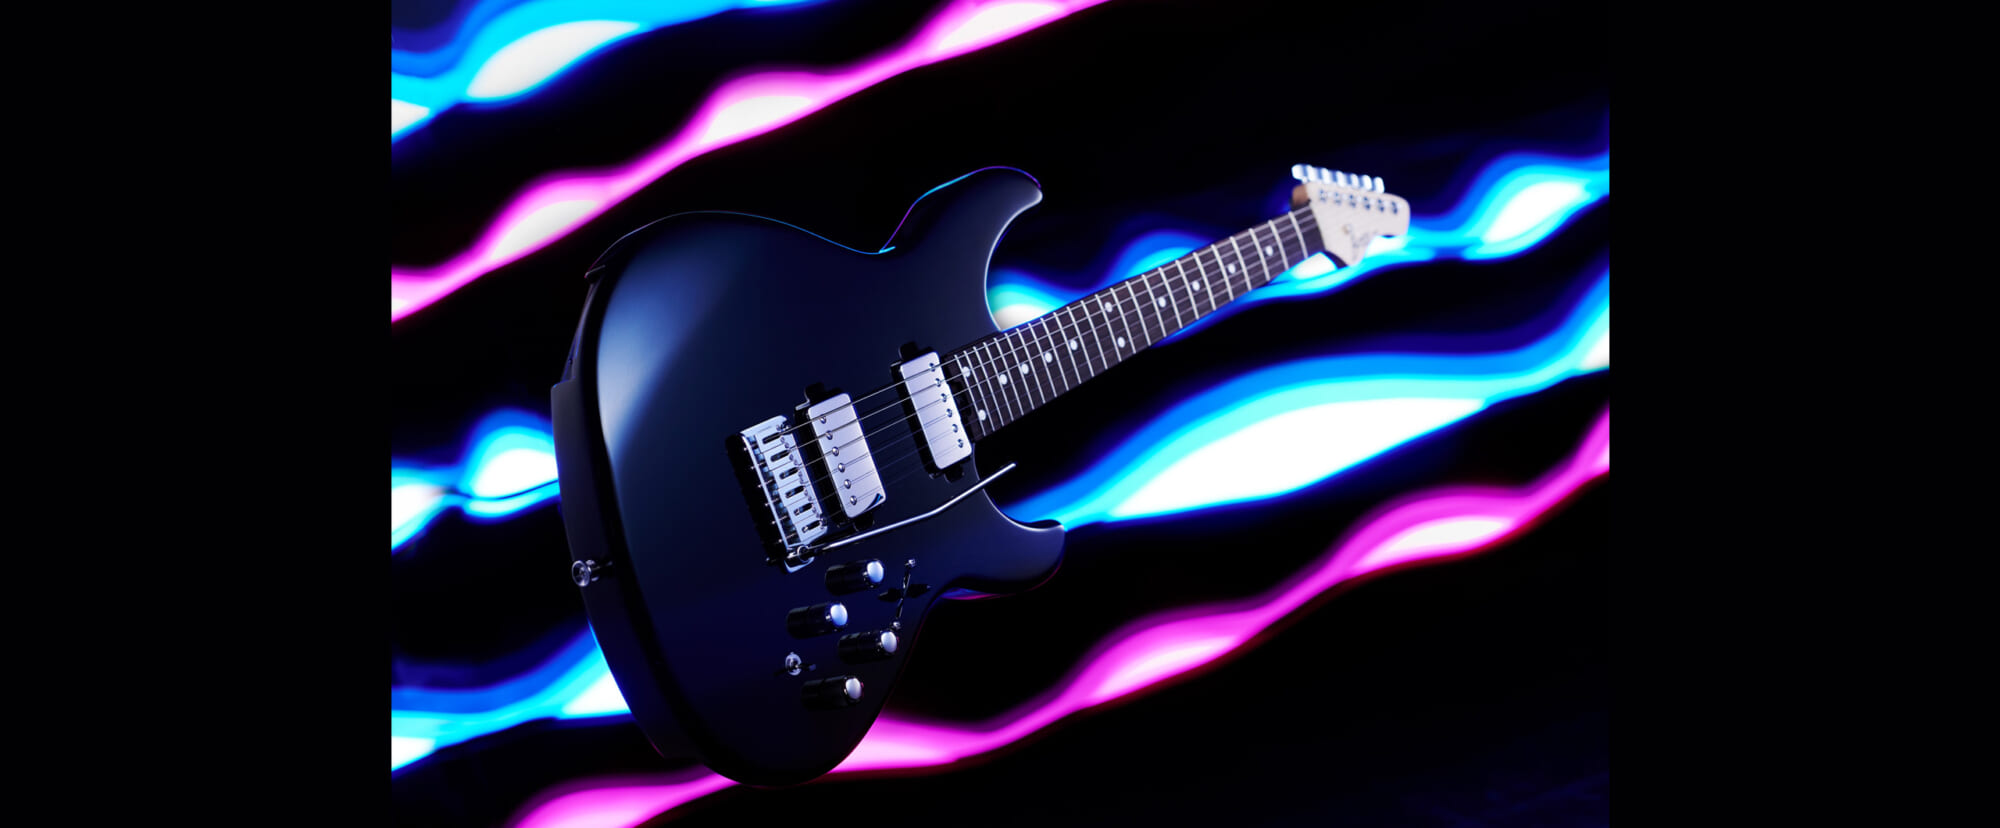 BOSSの先進的なシンセサイザー・テクノロジーを搭載したエレクトロニック・ギター“EURUS”2021年9月に発売